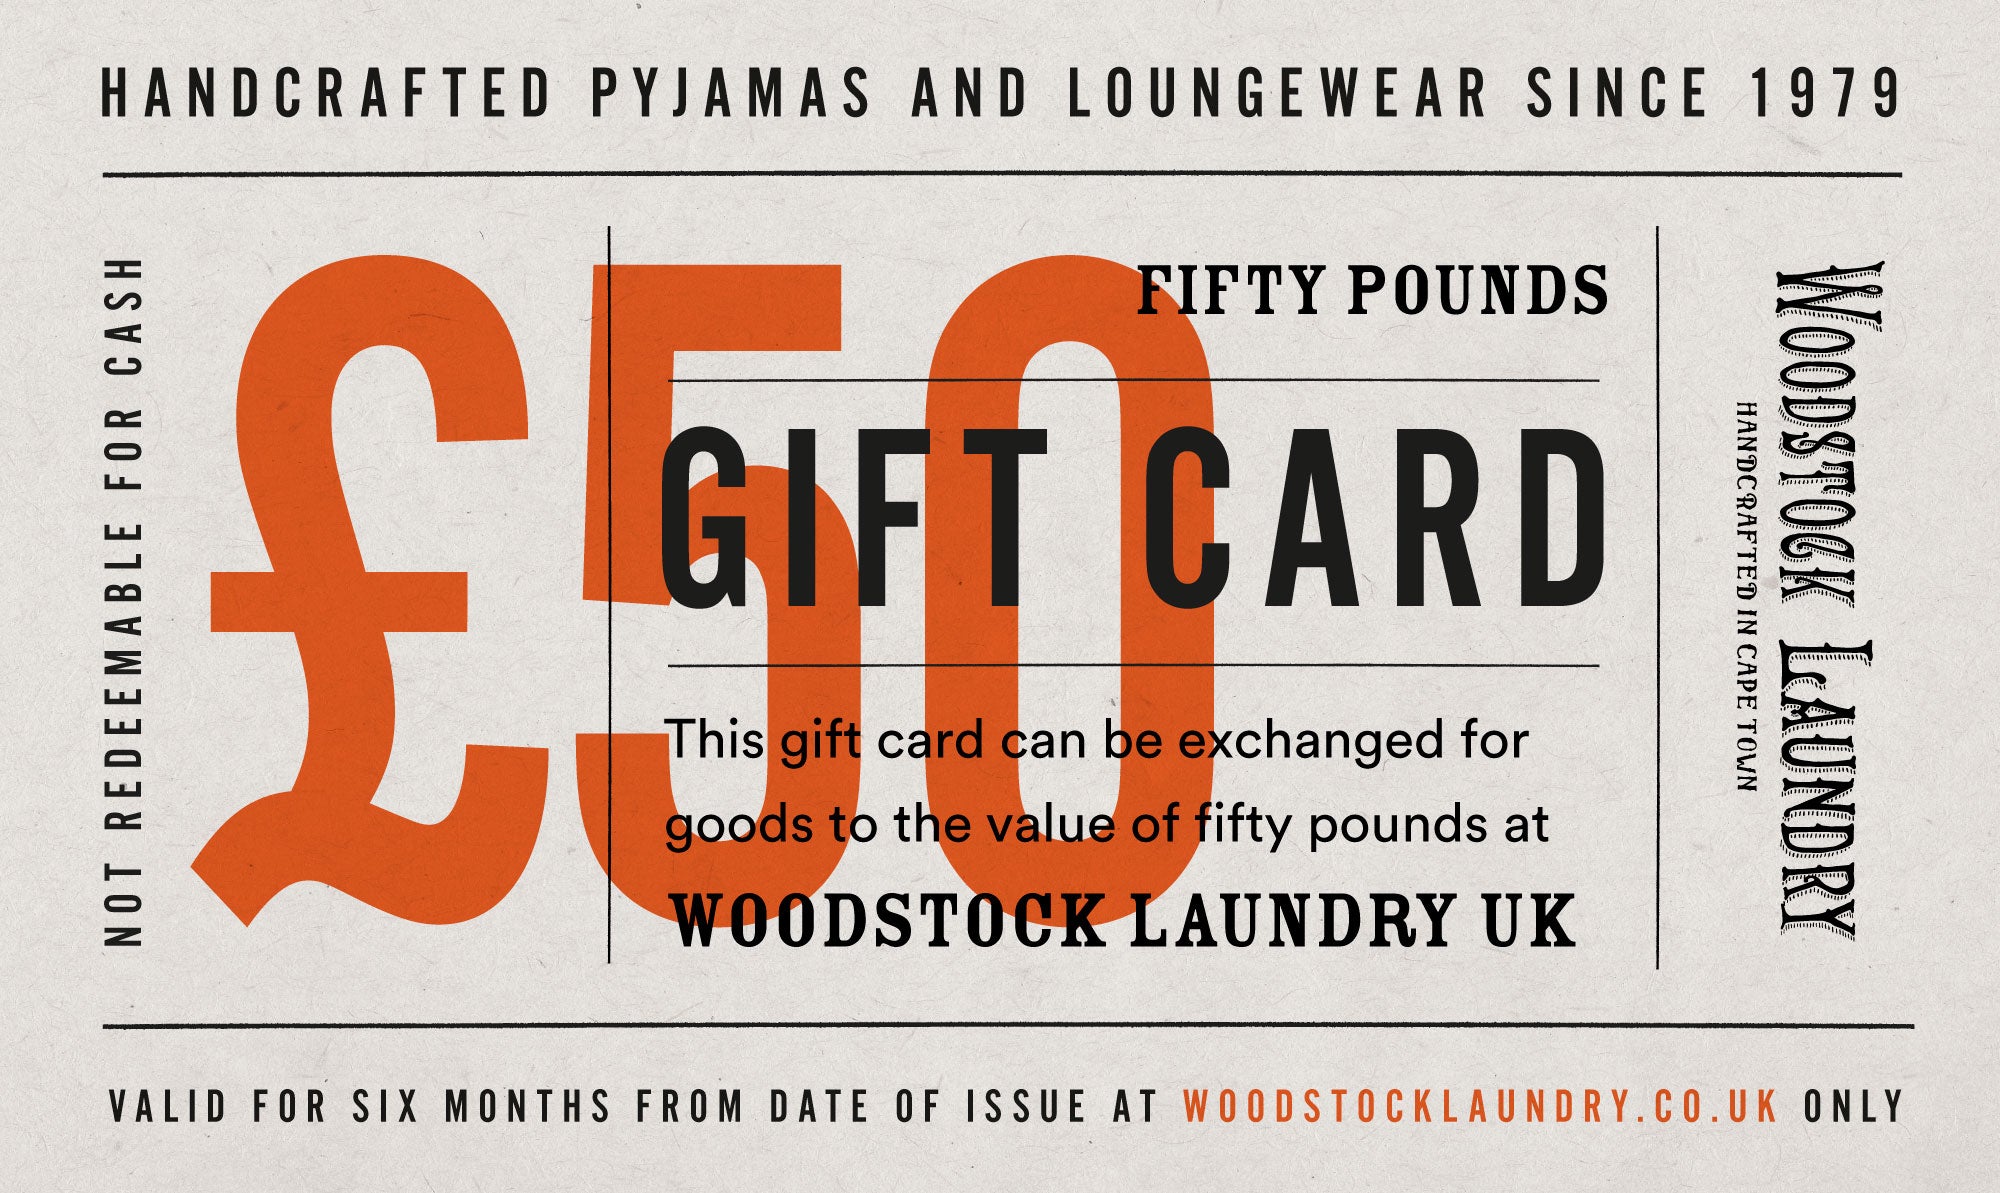 £50 Gift Card - Woodstock Laundry UK